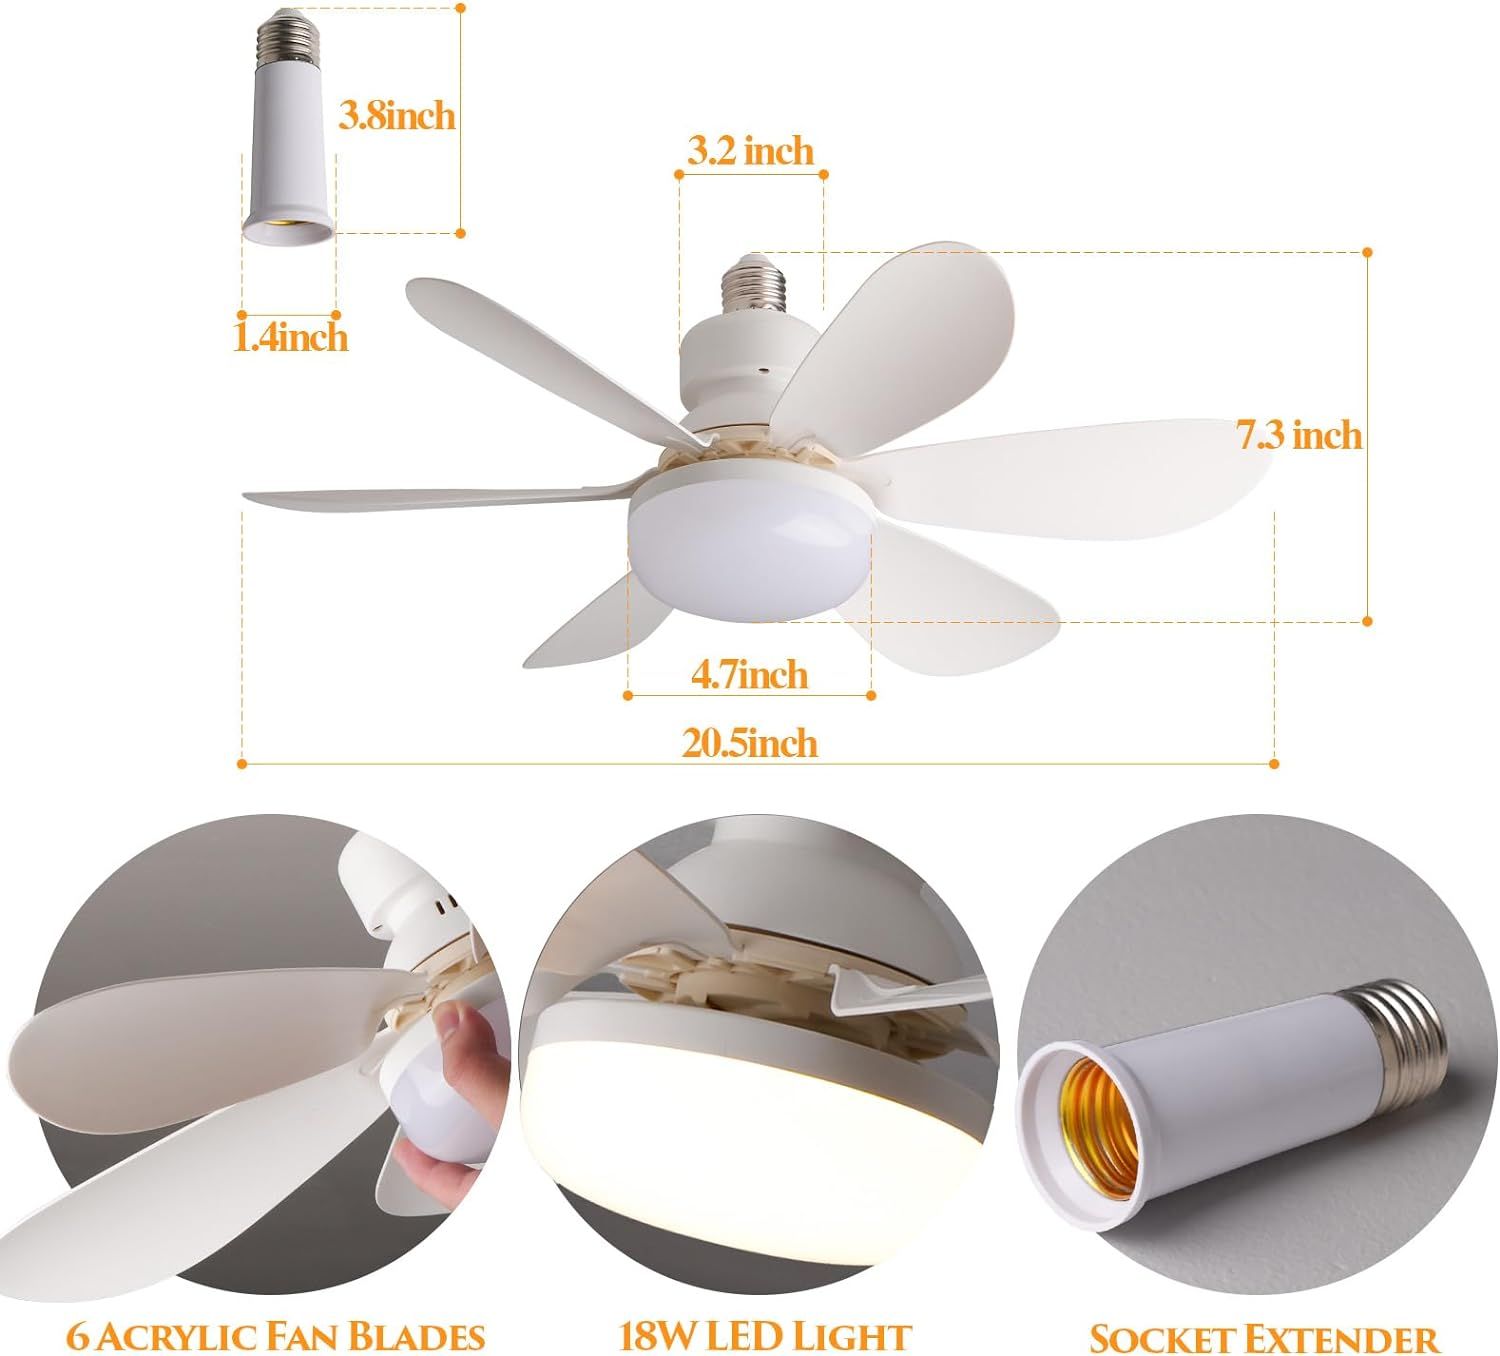 20 inch size of 3 speed light bulb socket ceiling fan with 6 acrylic fan blades, 18w led light, socket extender